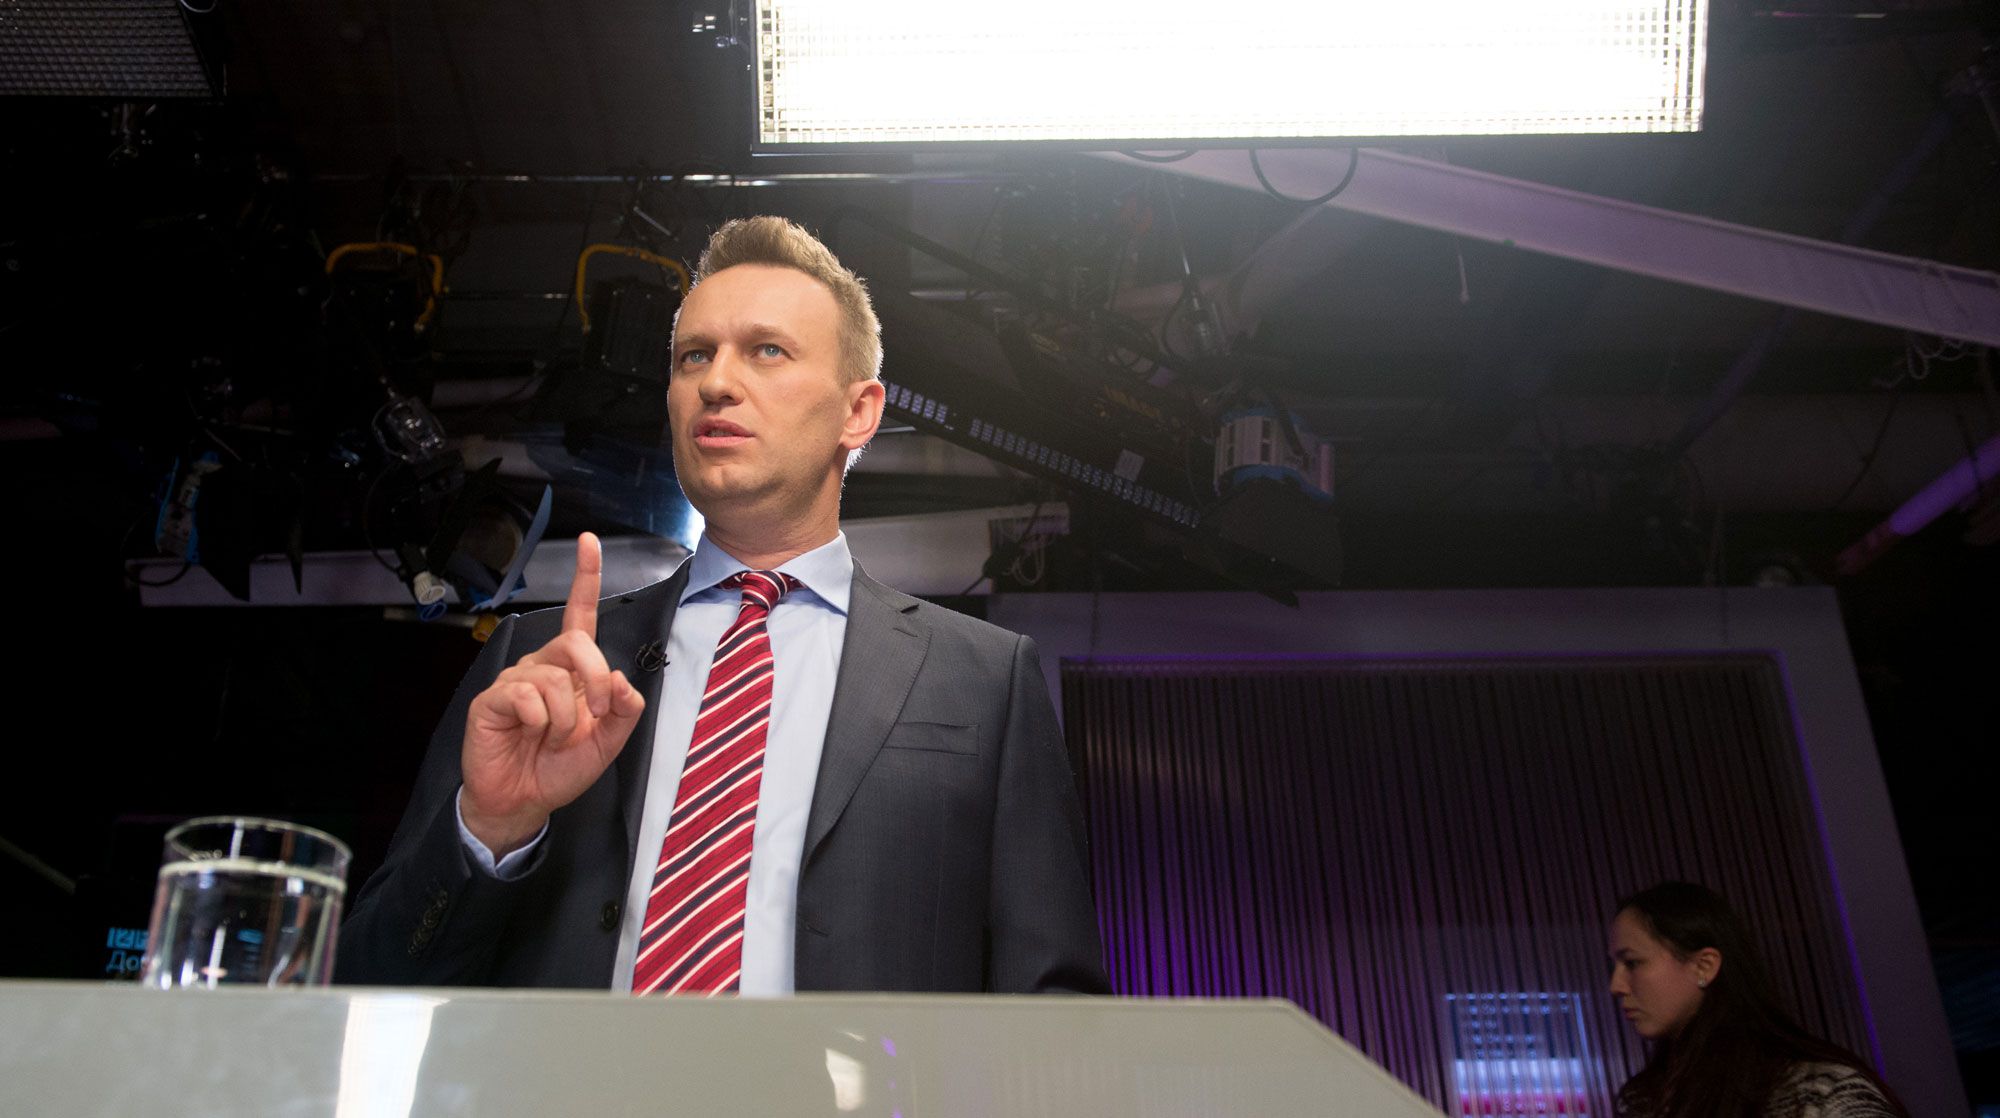 Dailystorm - ФСИН потребовала отправить Навального в колонию